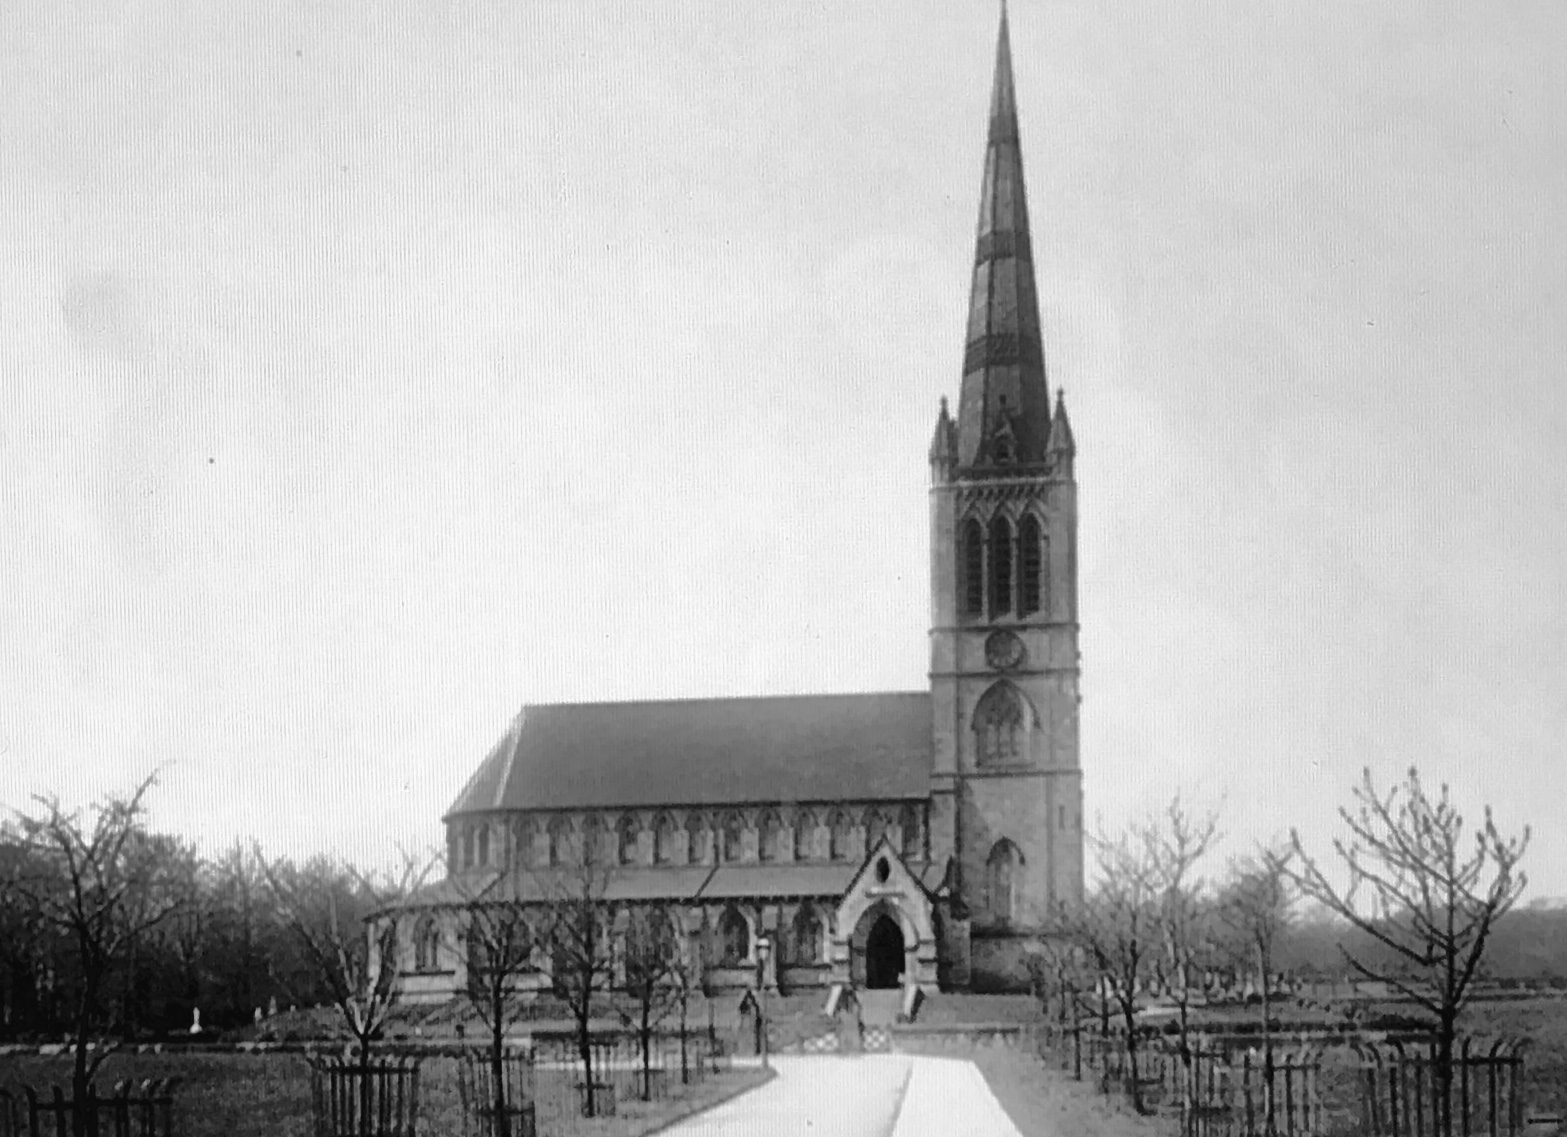 St Chad's Church, 1881